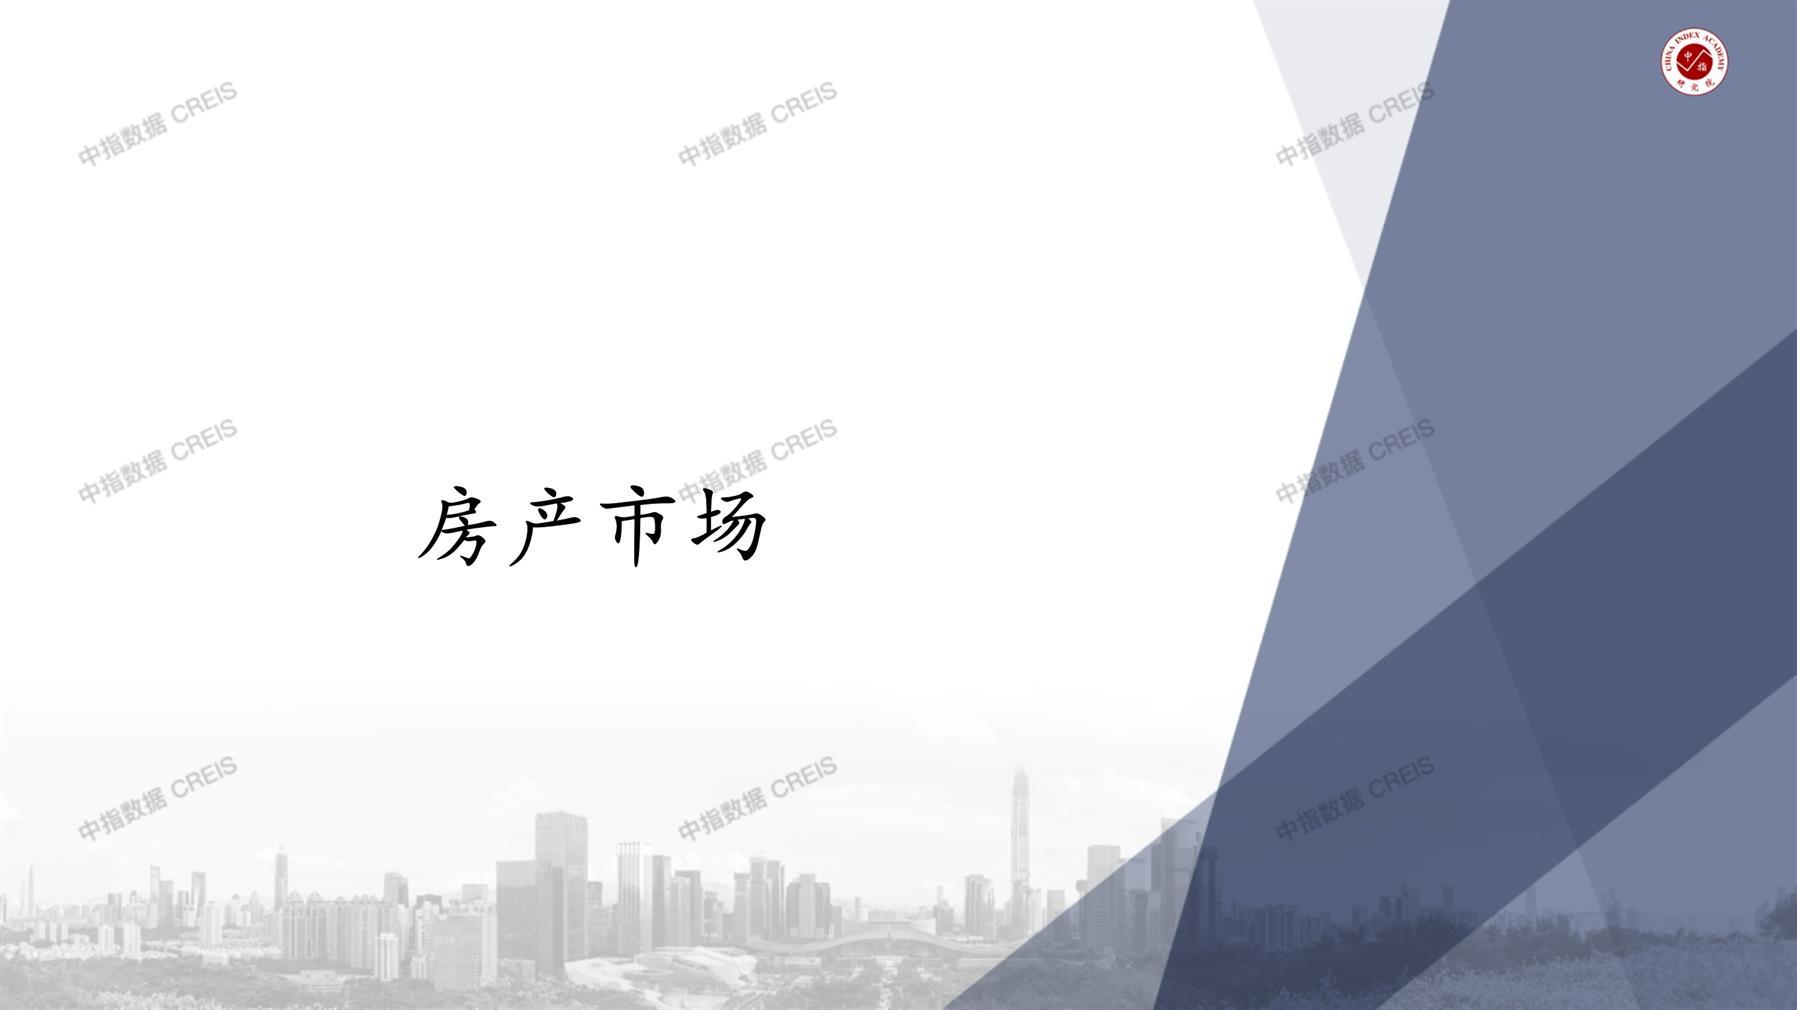 重庆、重庆房地产市场、商品房销售、住宅成交、土地市场、地块面积、重庆写字楼